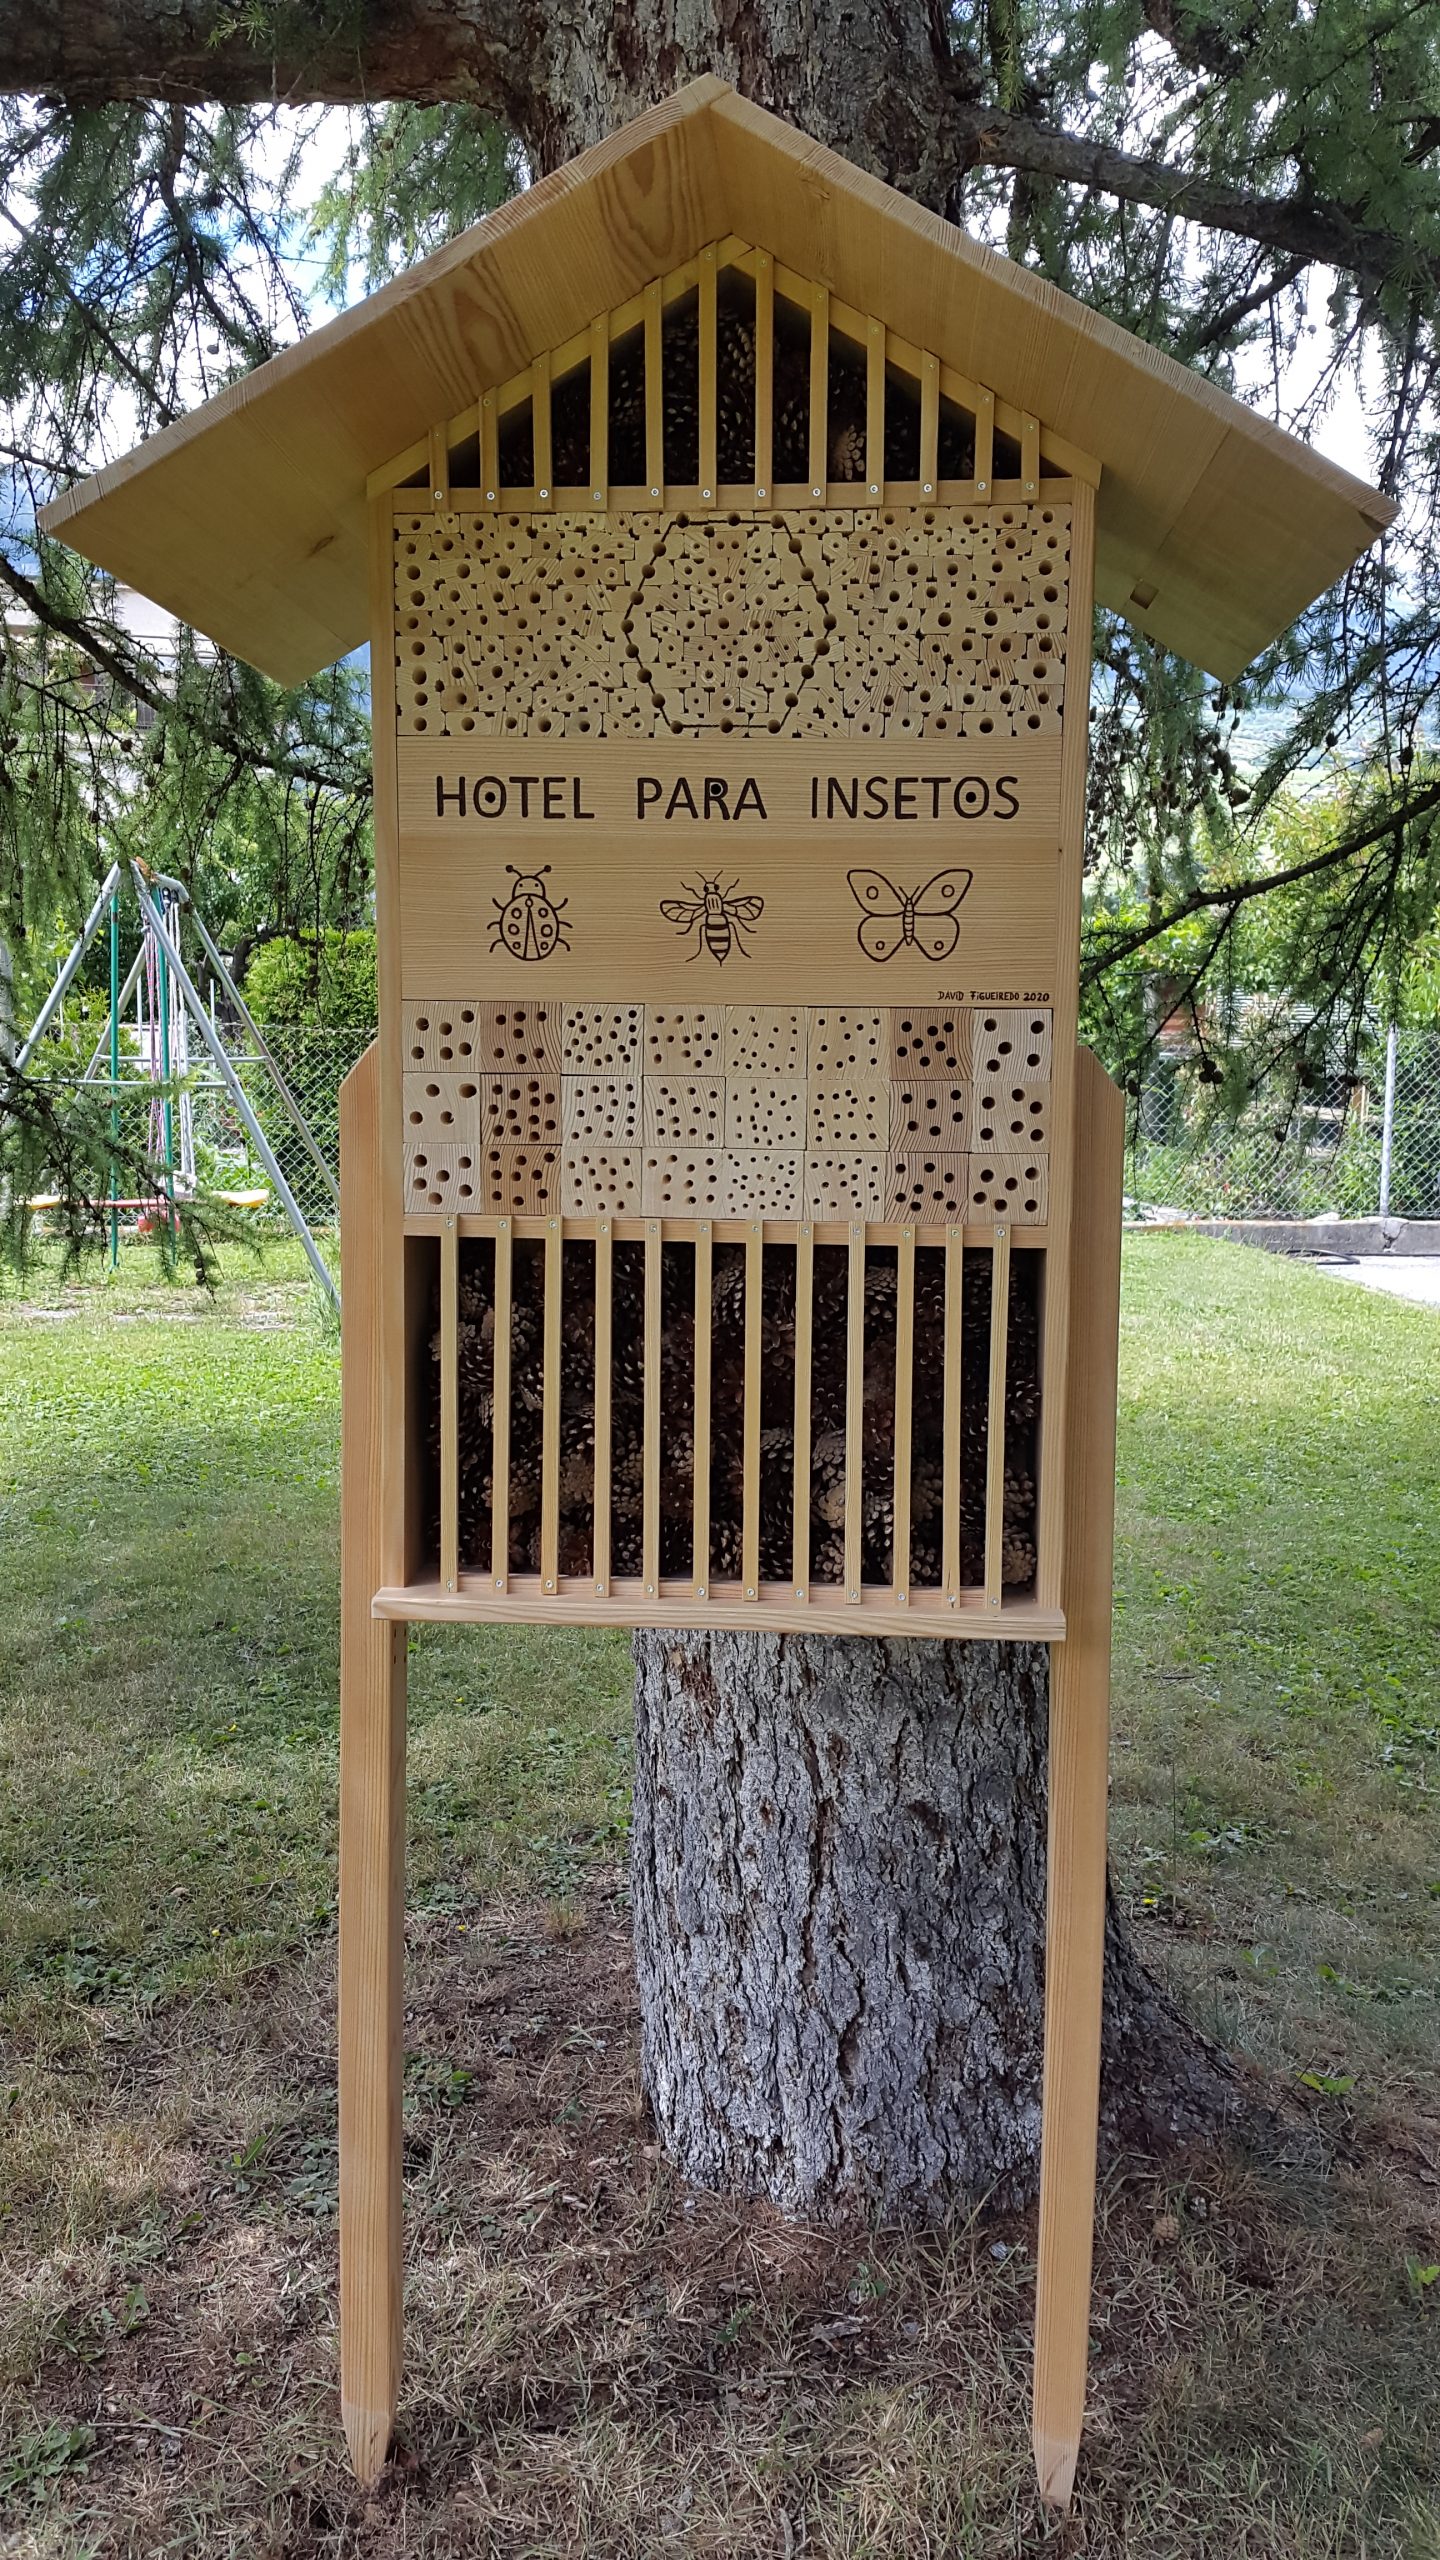 Hotel para insetos